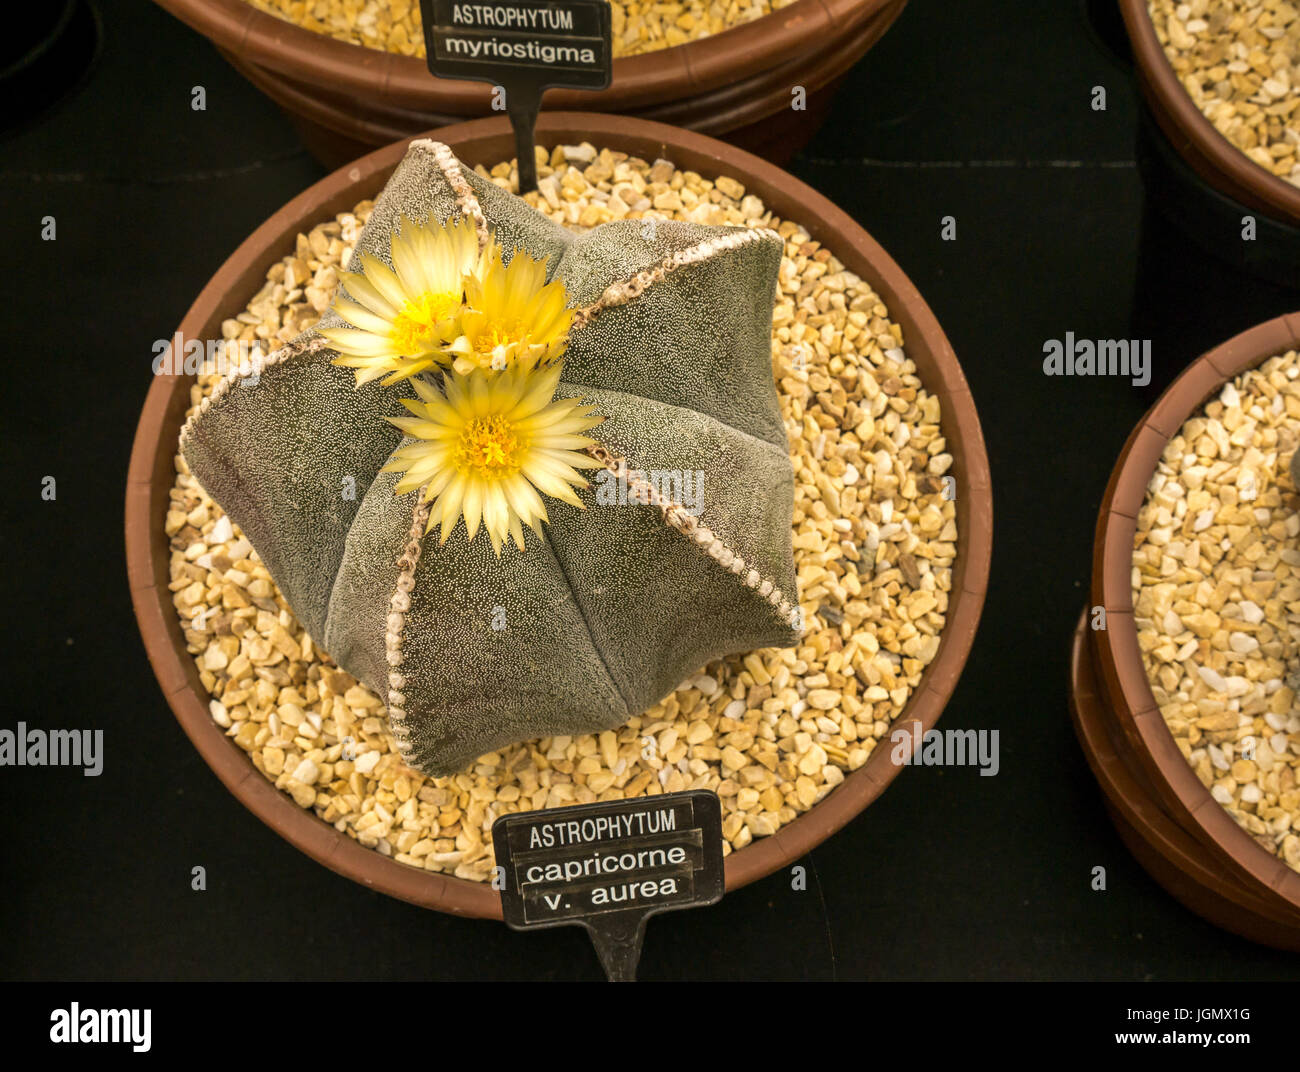 Astrophytum capricorne exposition de cactus au RHS Flower Show, Royaume-Uni Banque D'Images